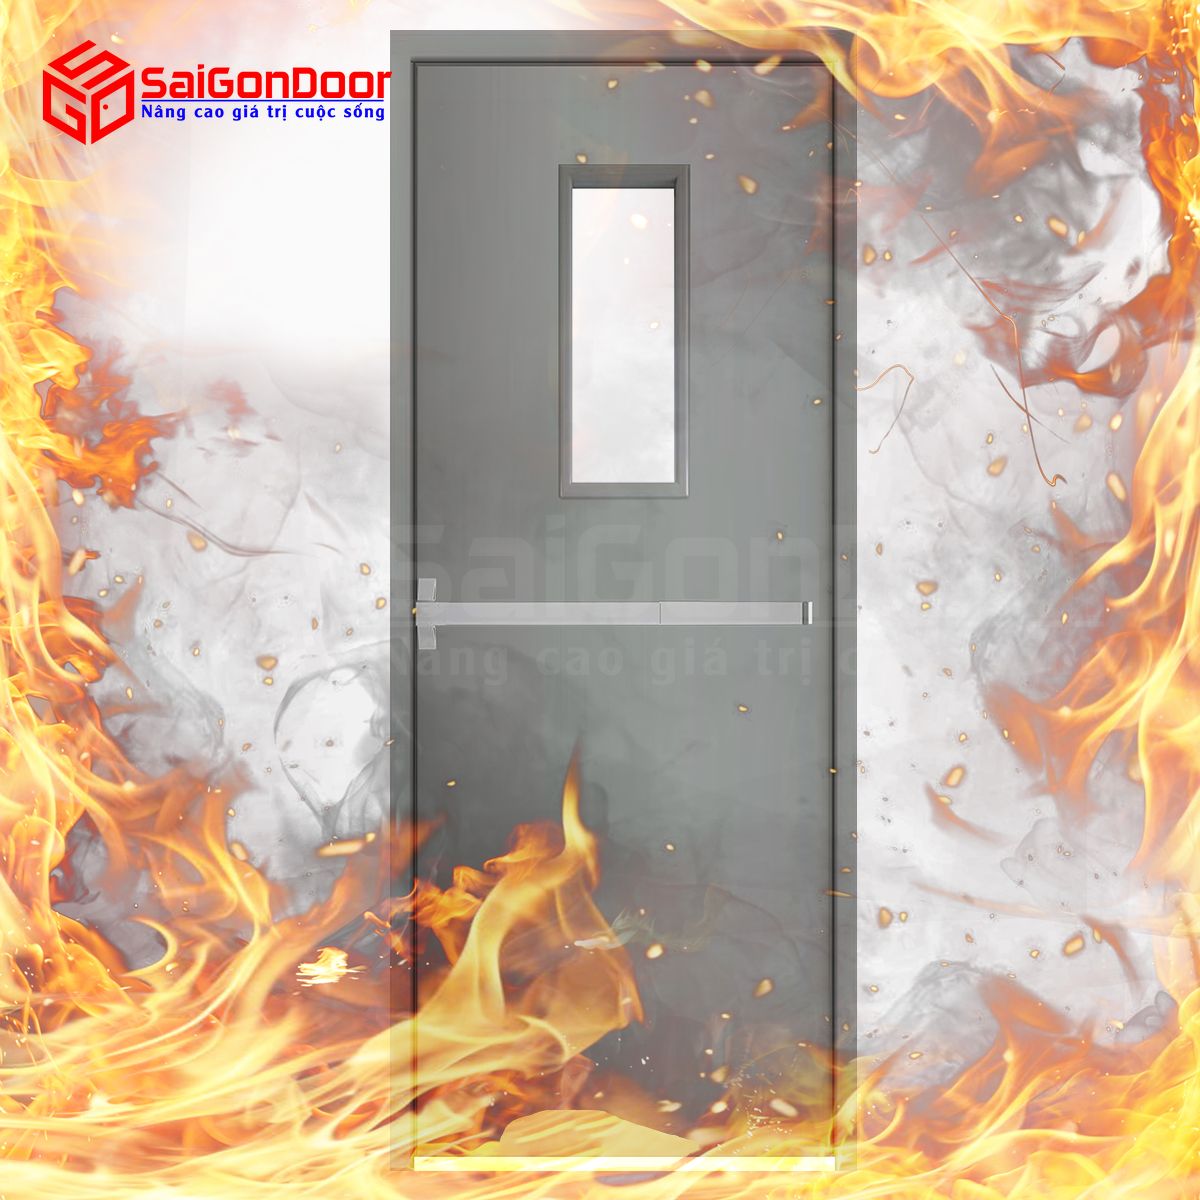 Cửa chống cháy kết hợp gioăng ngăn cháy đảm bảo an toàn và hiệu quả chống cháy